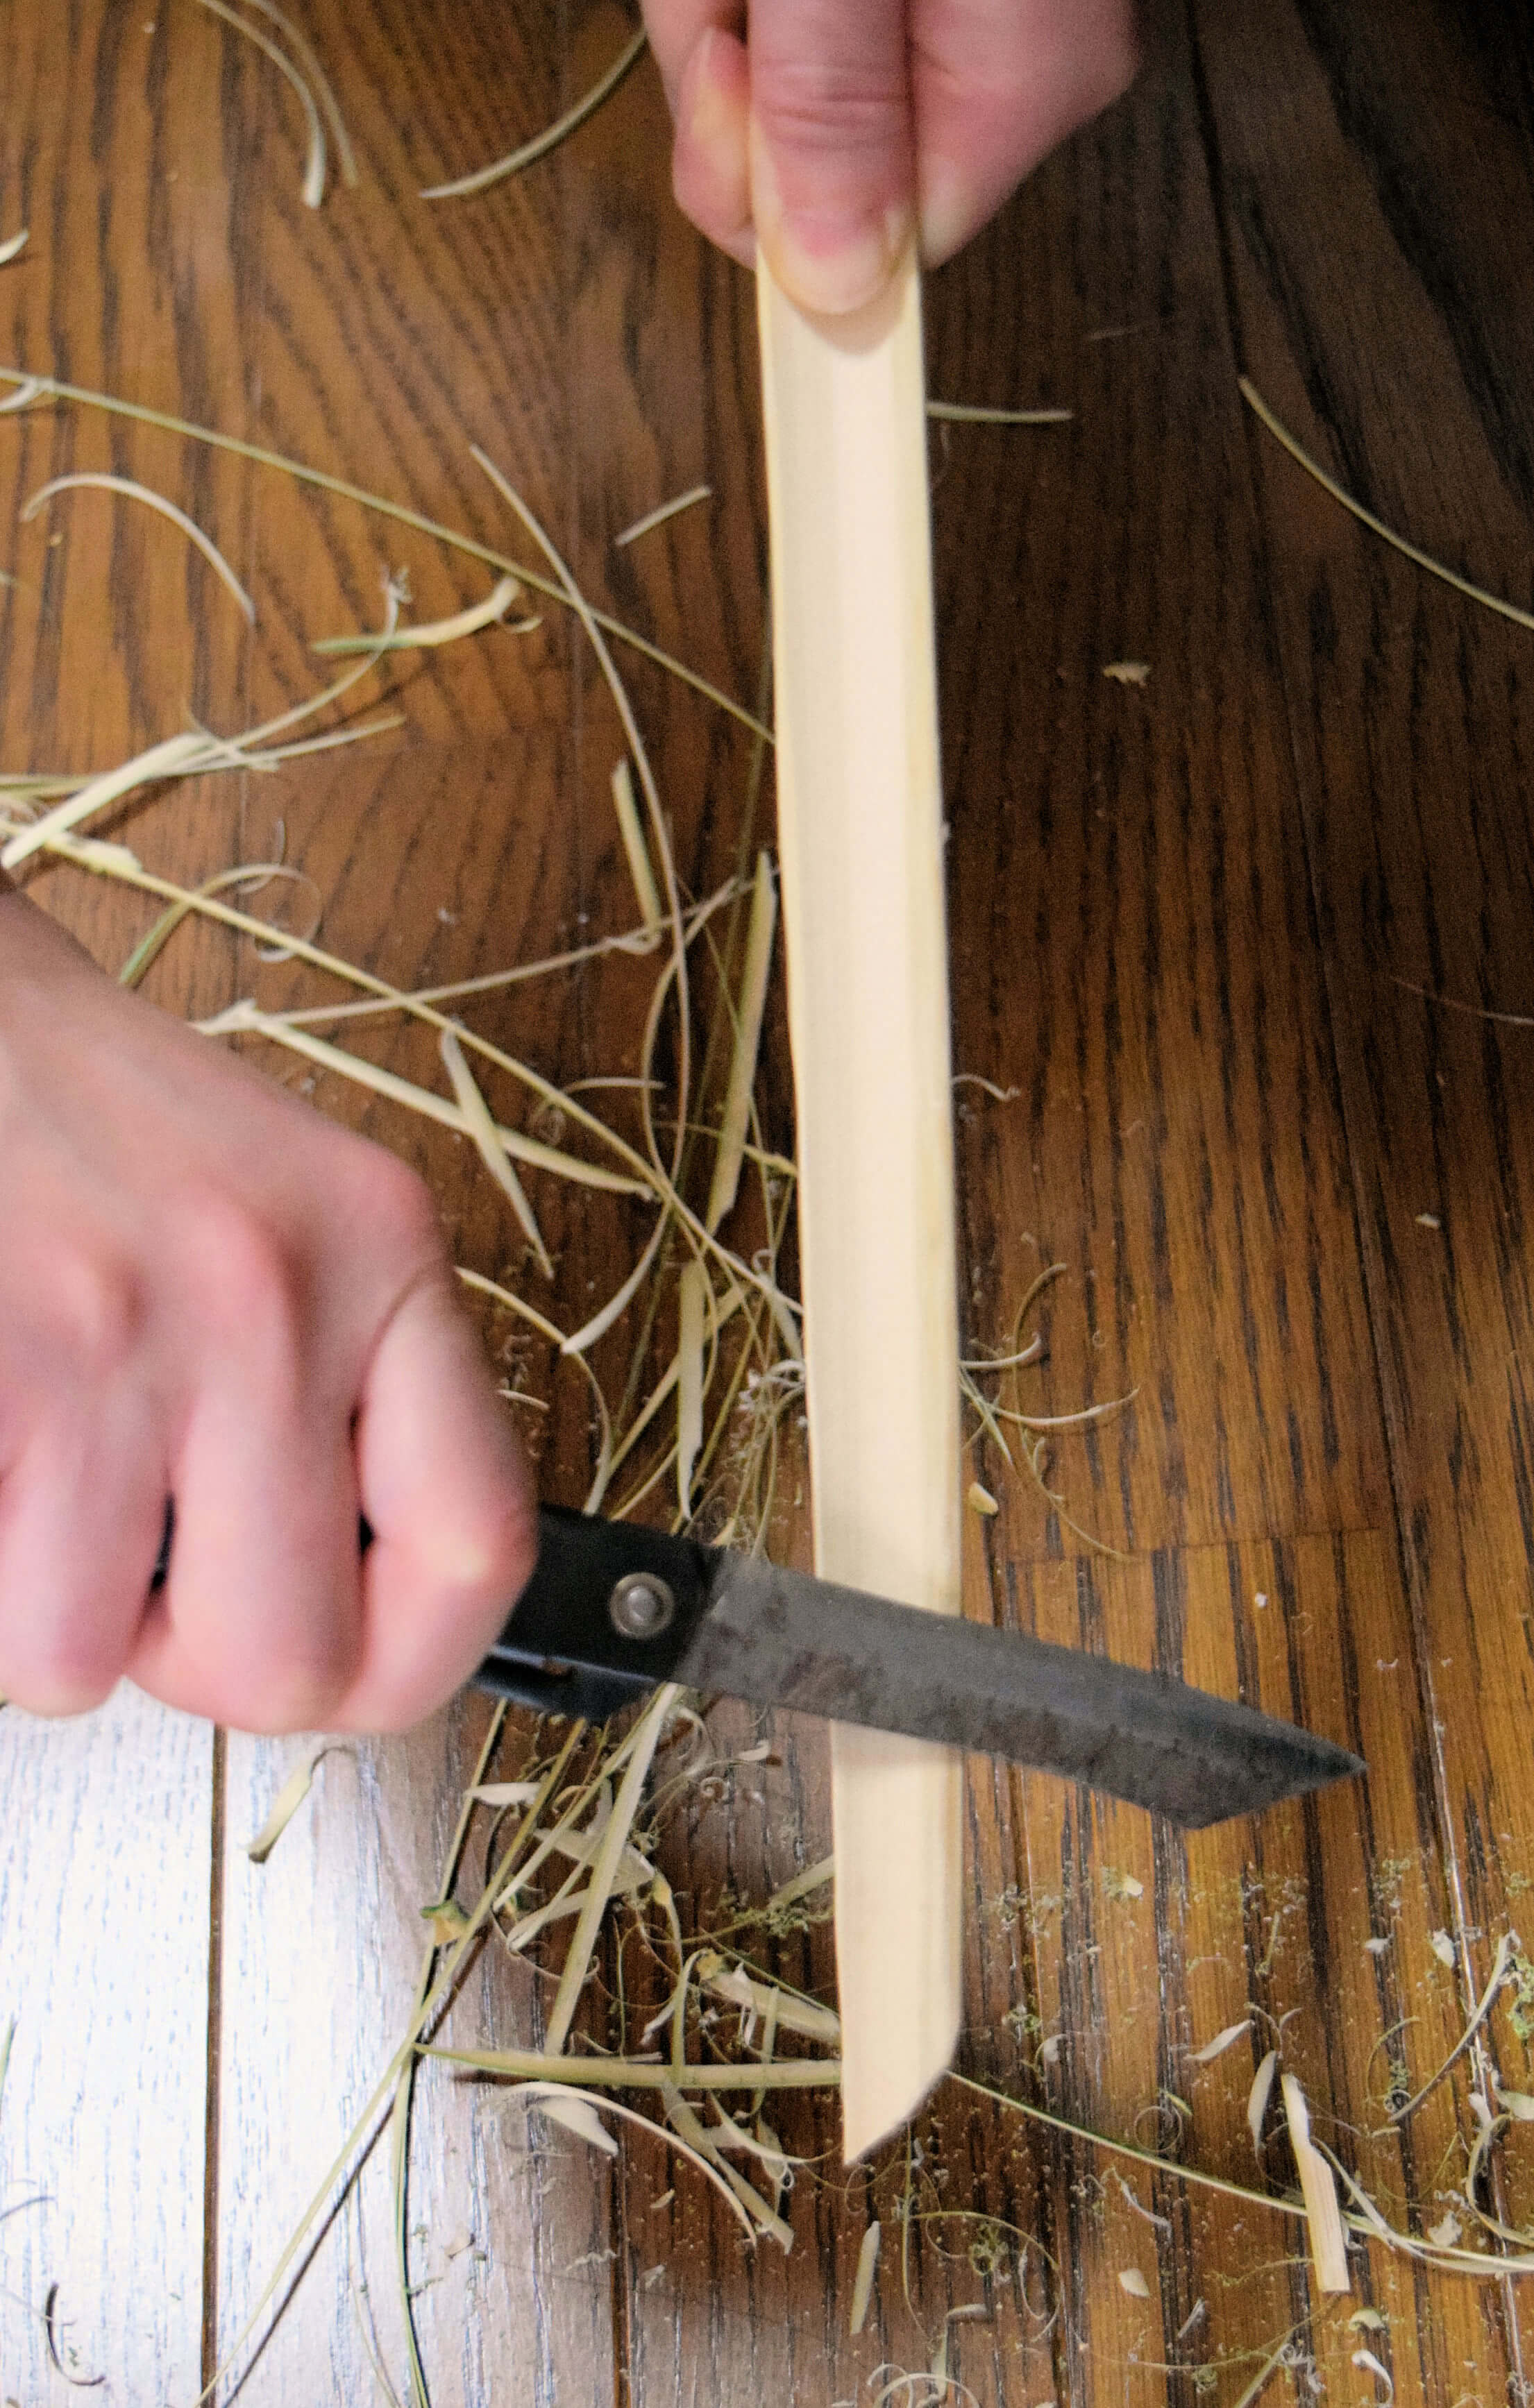 竹でおもちゃの刀を作ろう 子どもに与えては危険です 趣味千